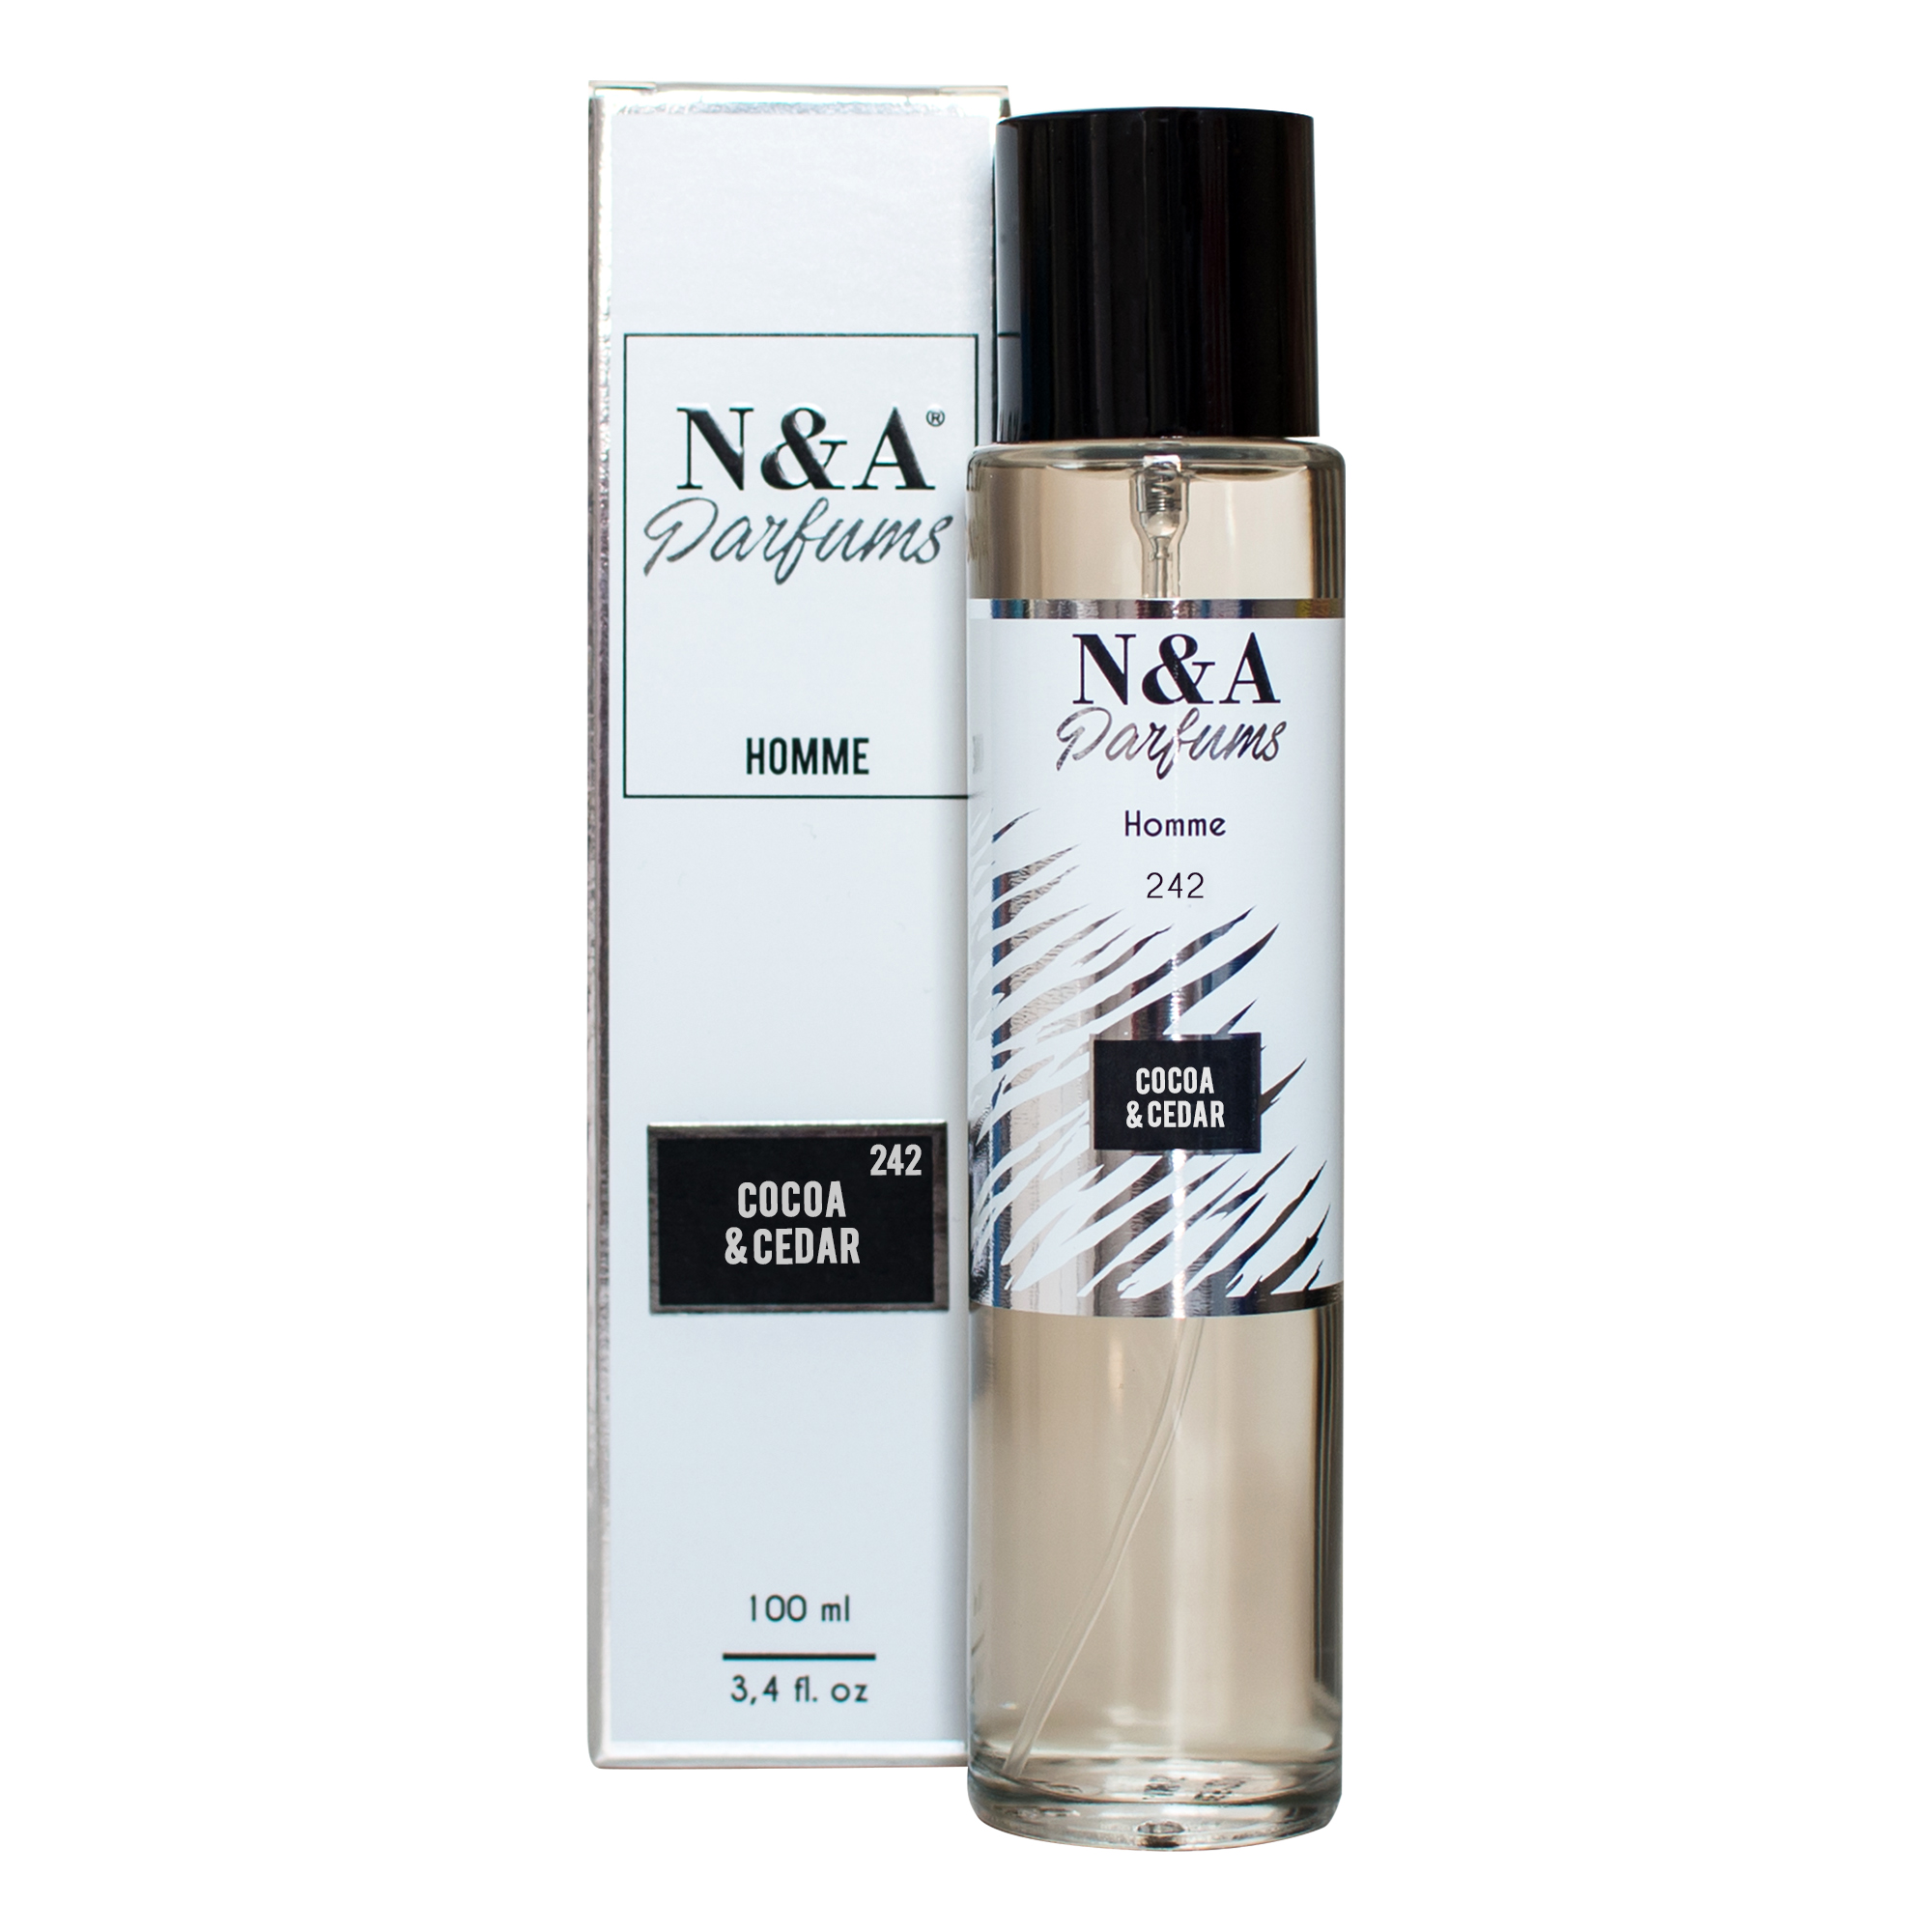 Perfume N&A 242 100ml - Se Gosta de CAROLINA HERRERA BAD BOY experimente a Nossa Fragrância